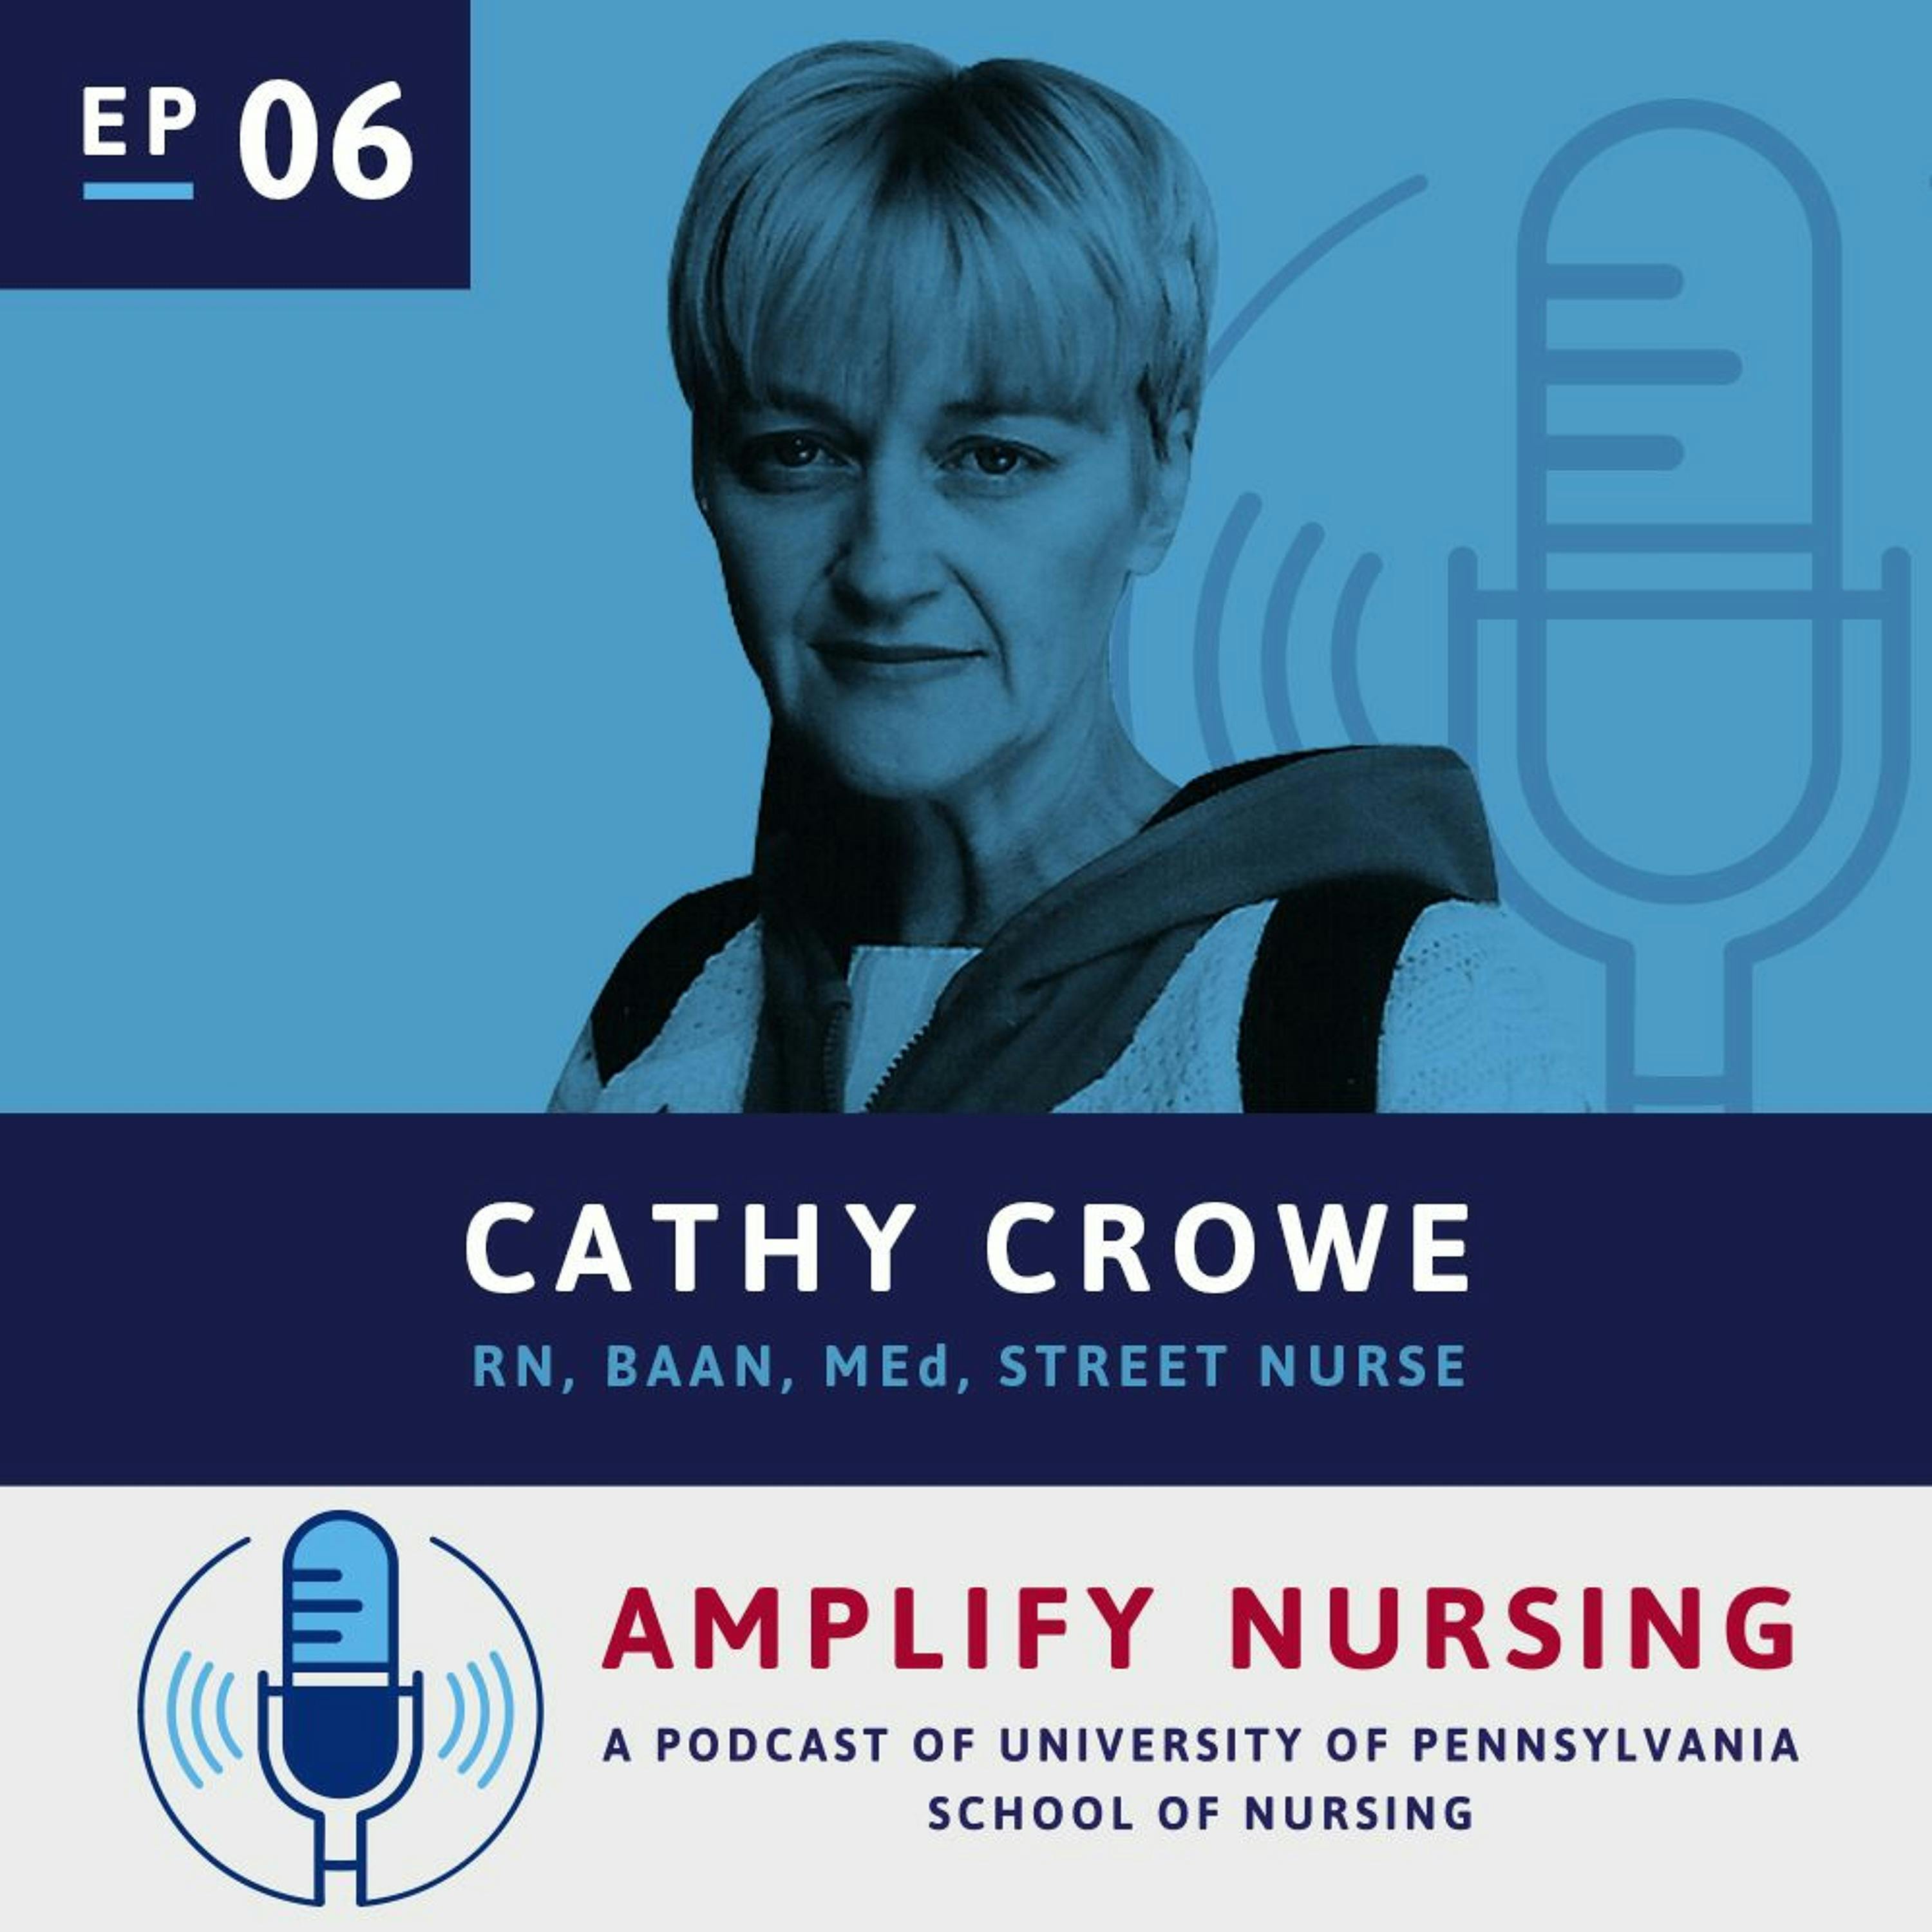 AmplifyNursing: Season 1 Episode 06: Cathy Crowe